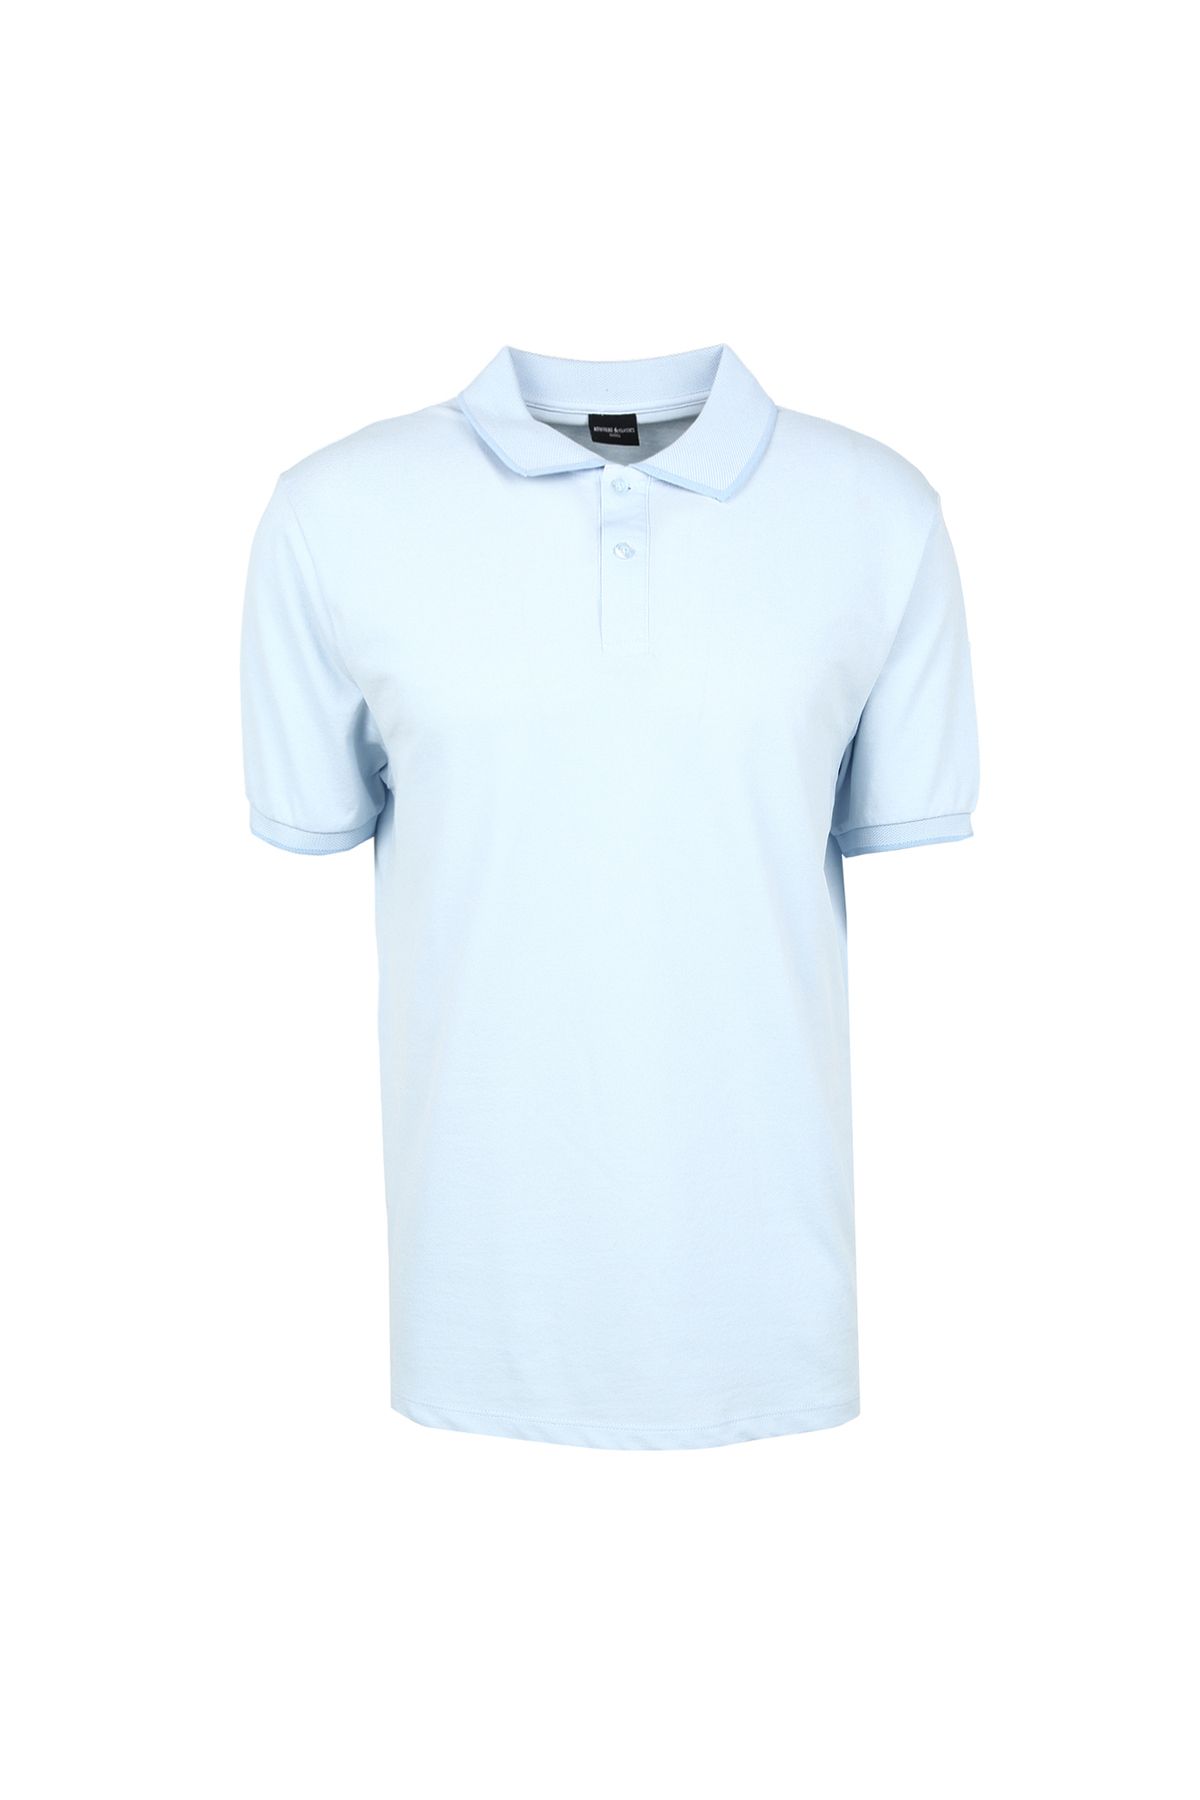 Altınyıldız Classics Altınyıldız Classics Açık Mavi - Beyaz Erkek Polo T-Shirt 4A9000000003